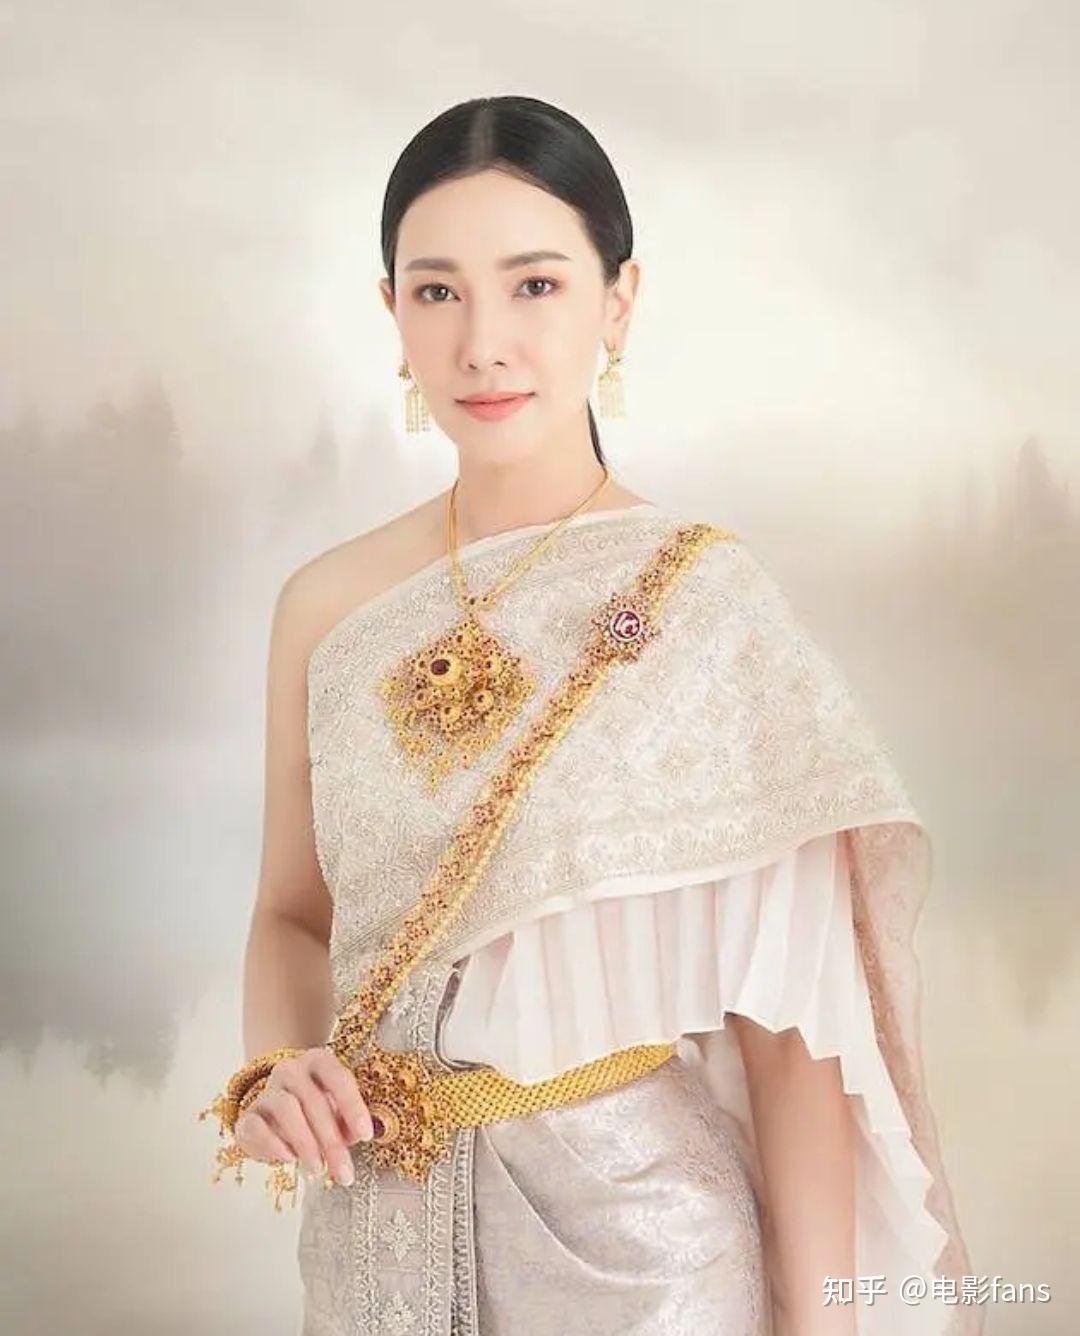 如何评价泰国女演员沃拉娜特·旺萨莞? 